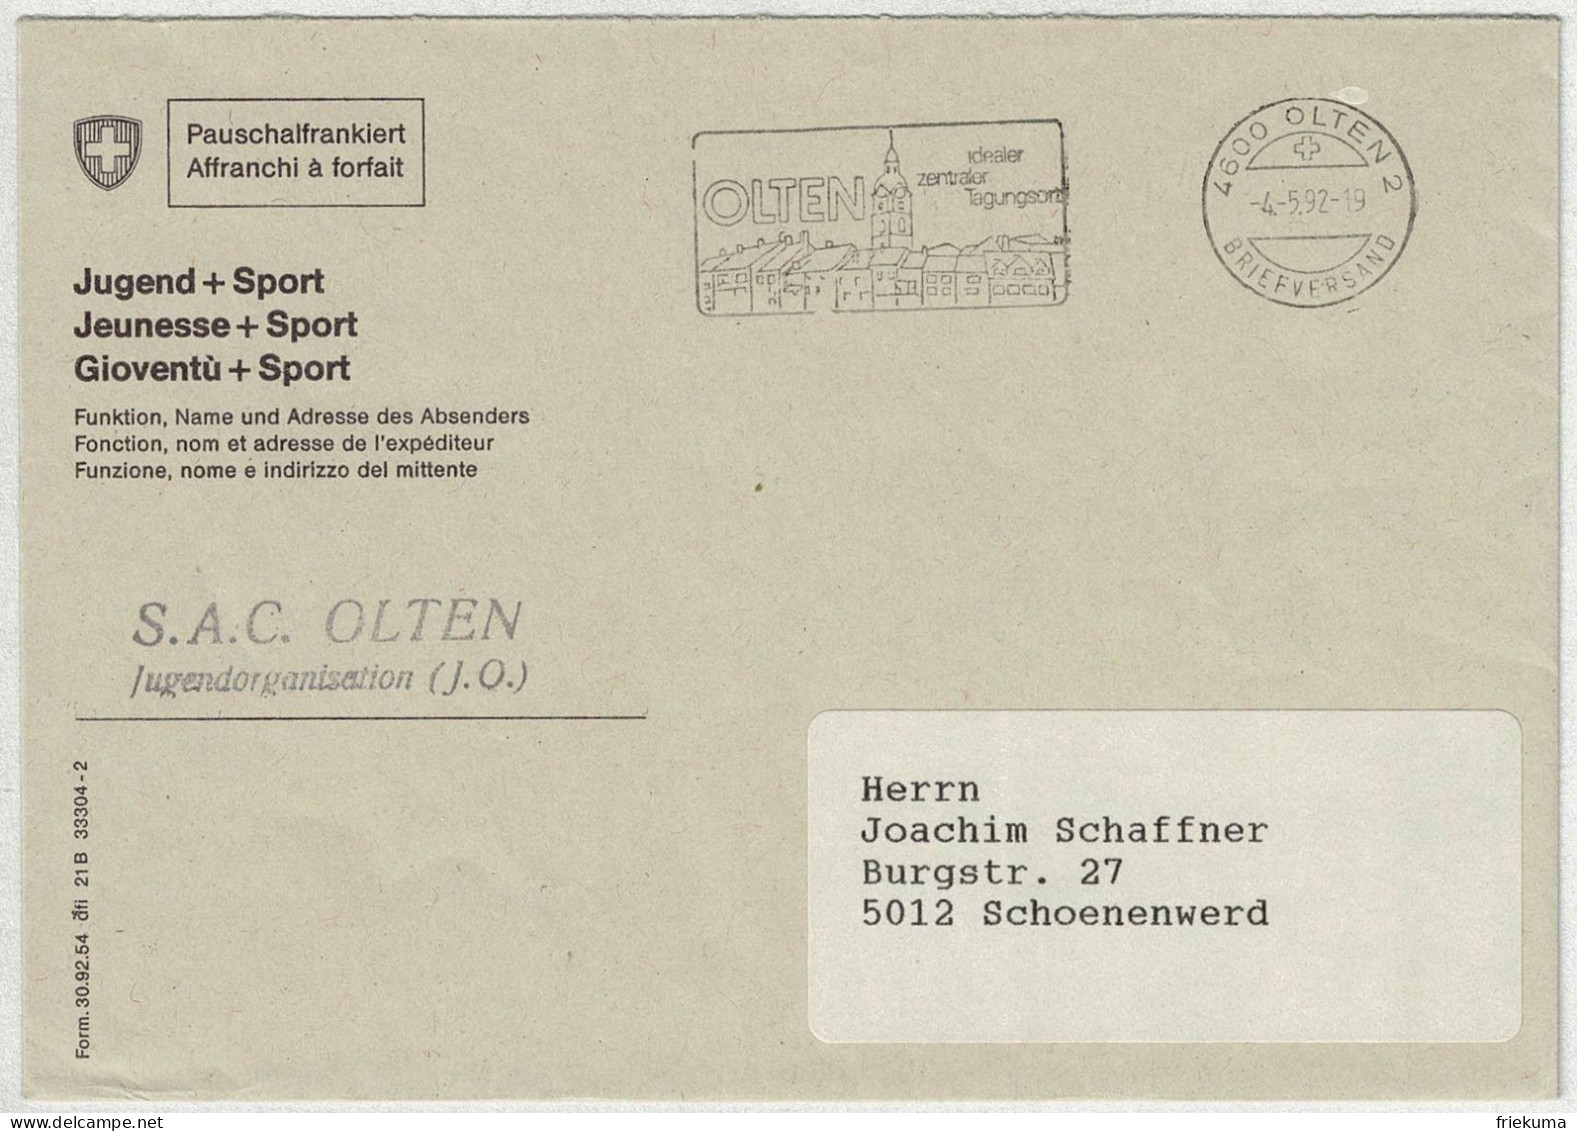 Schweiz 1992, Brief Pauschalfrankiert Olten - Schönenwerd - Marcofilie